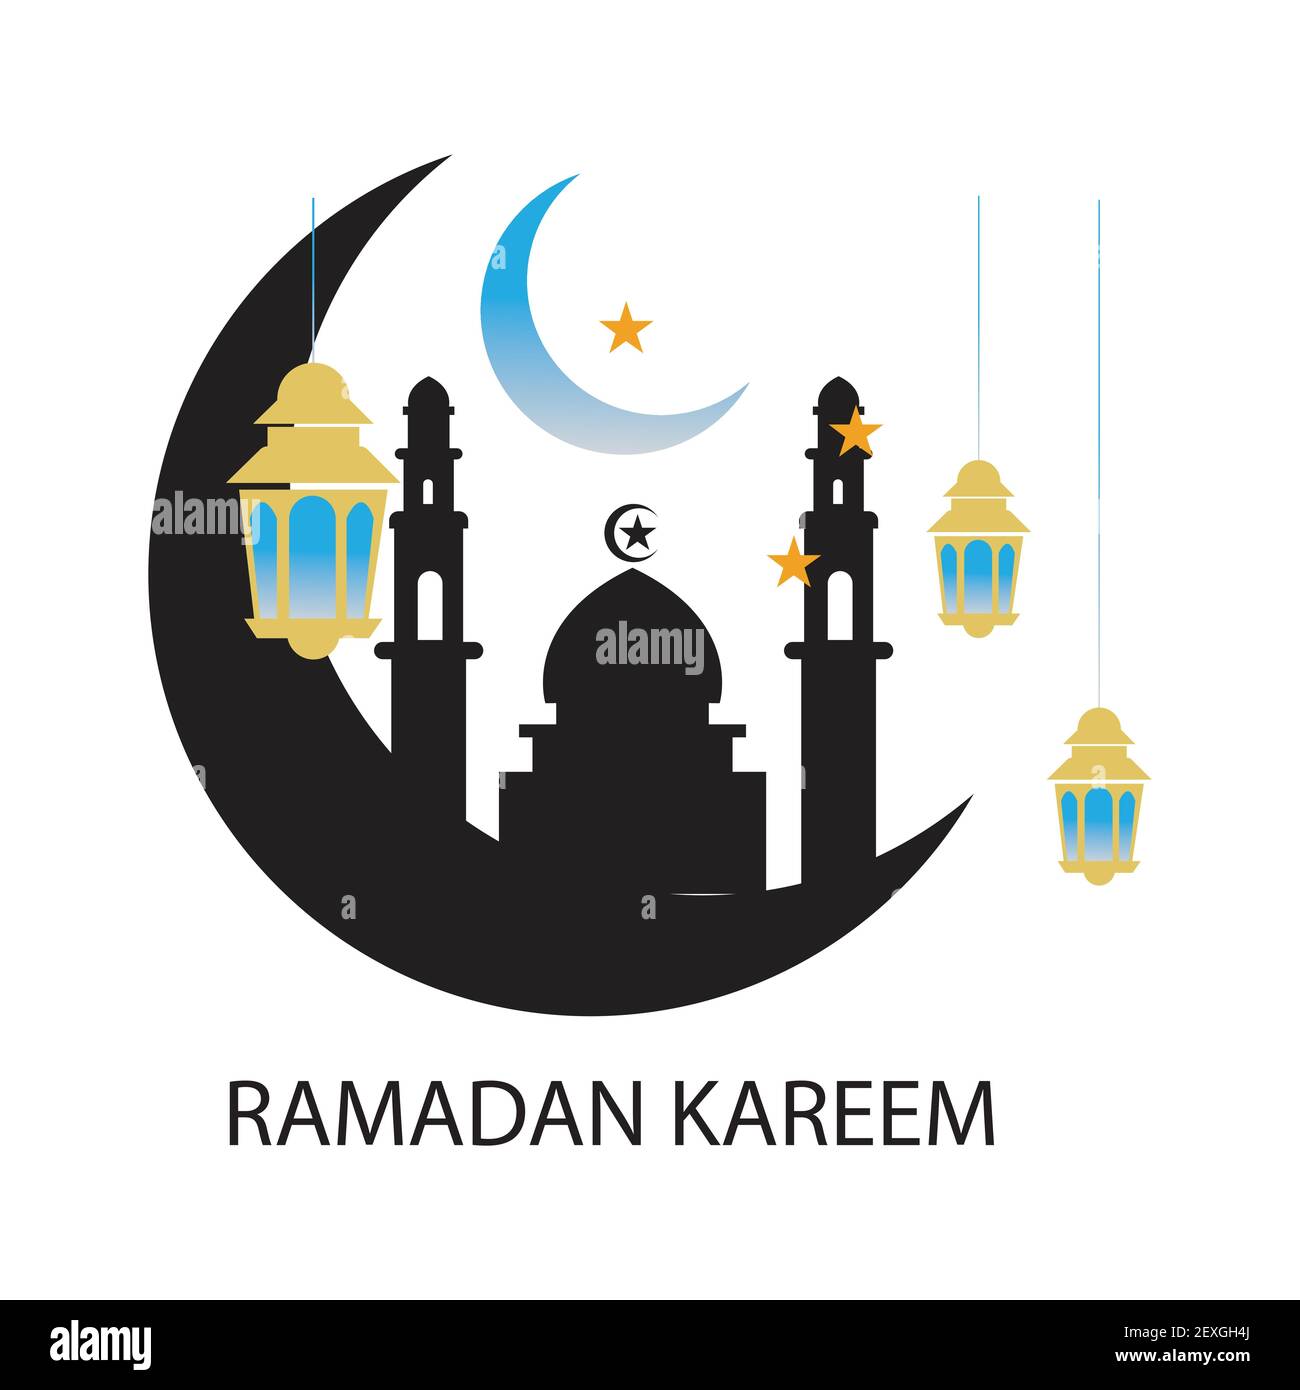 Ramadhan meaning ya marhaban Ramadan, The